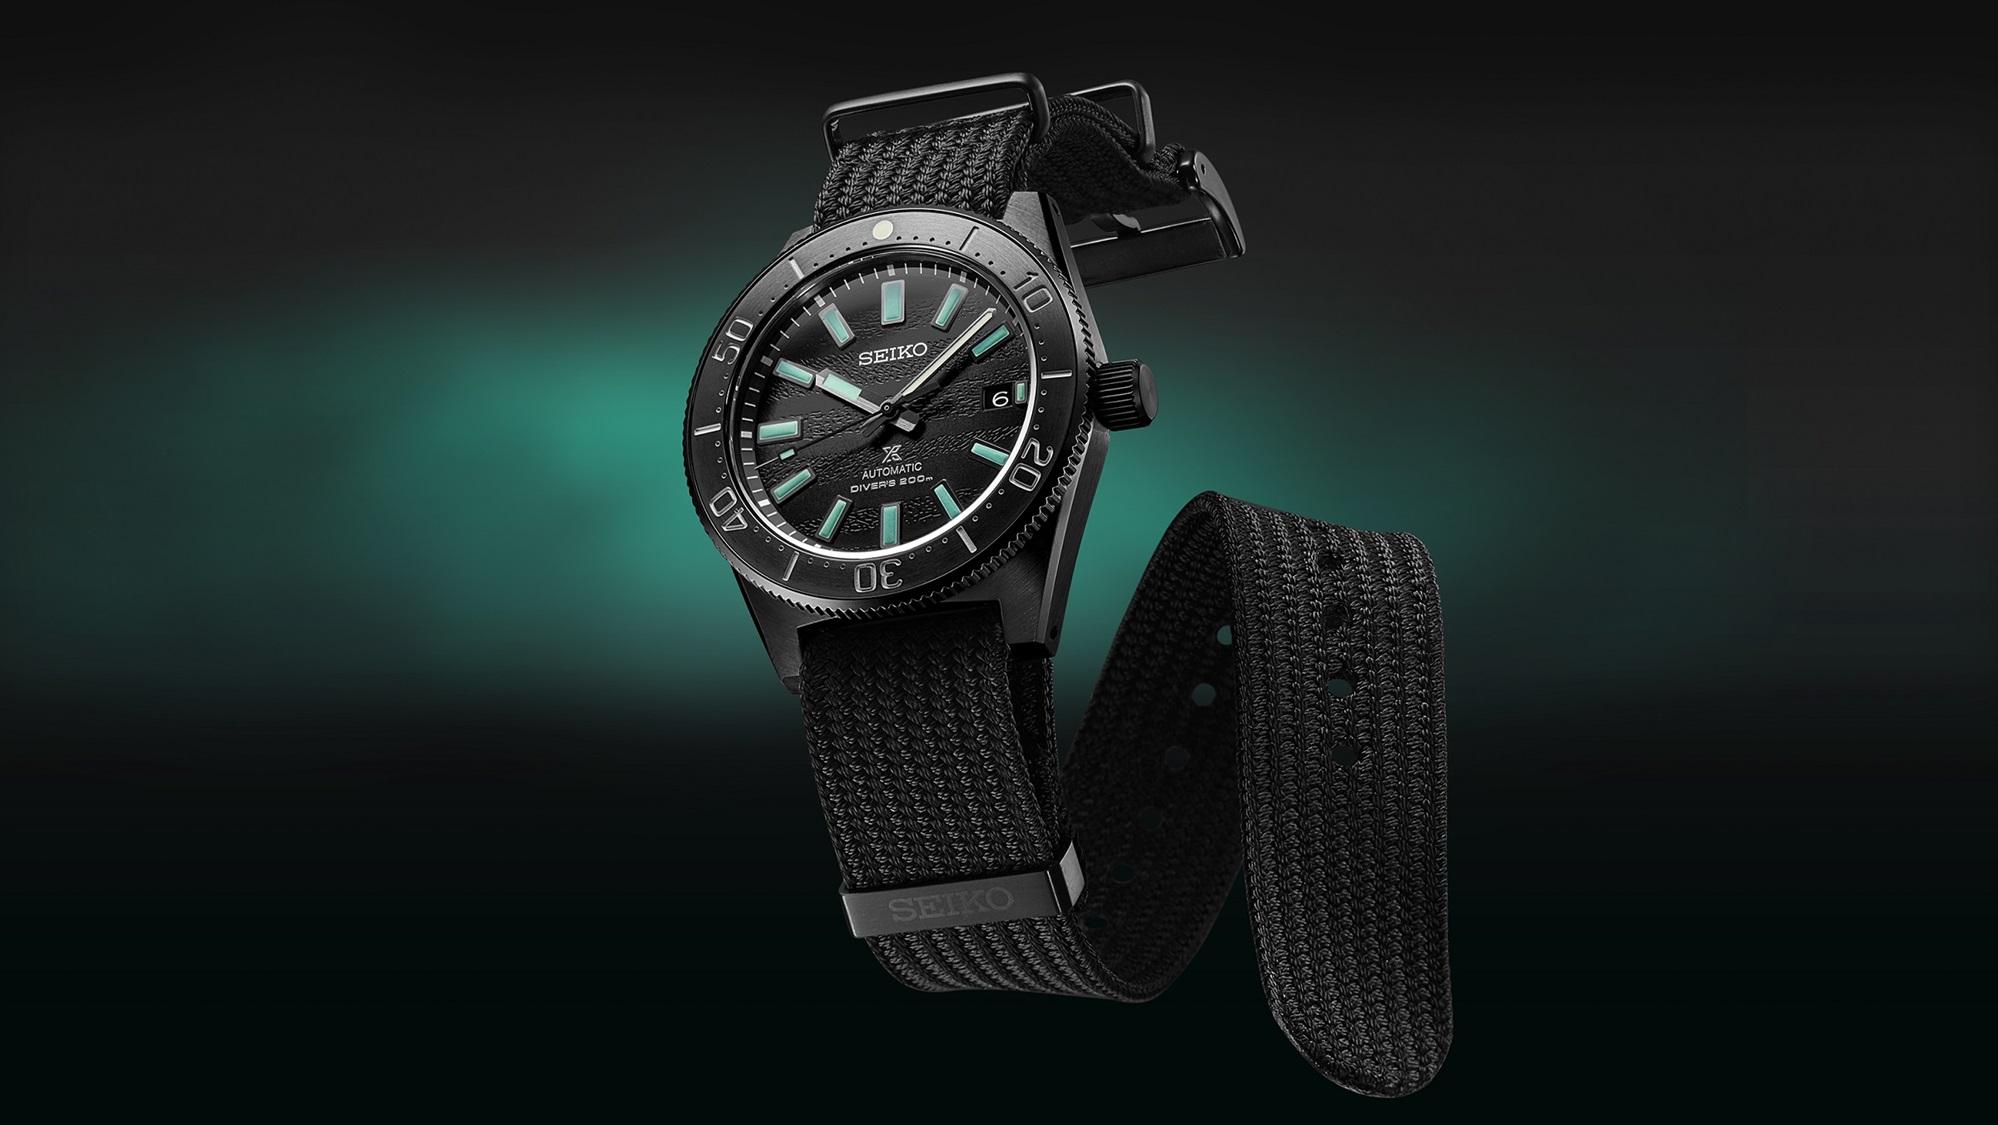 Relógio de mergulho preto com detalhes com a tinta luminescente verde-água Green Lumibright Pro. Seiko Prospex SLA067J1, edição limitada The Black Series, conceito Night Vision, reinterpretação moderna do Diver's de 1965 com bracelete têxtil.